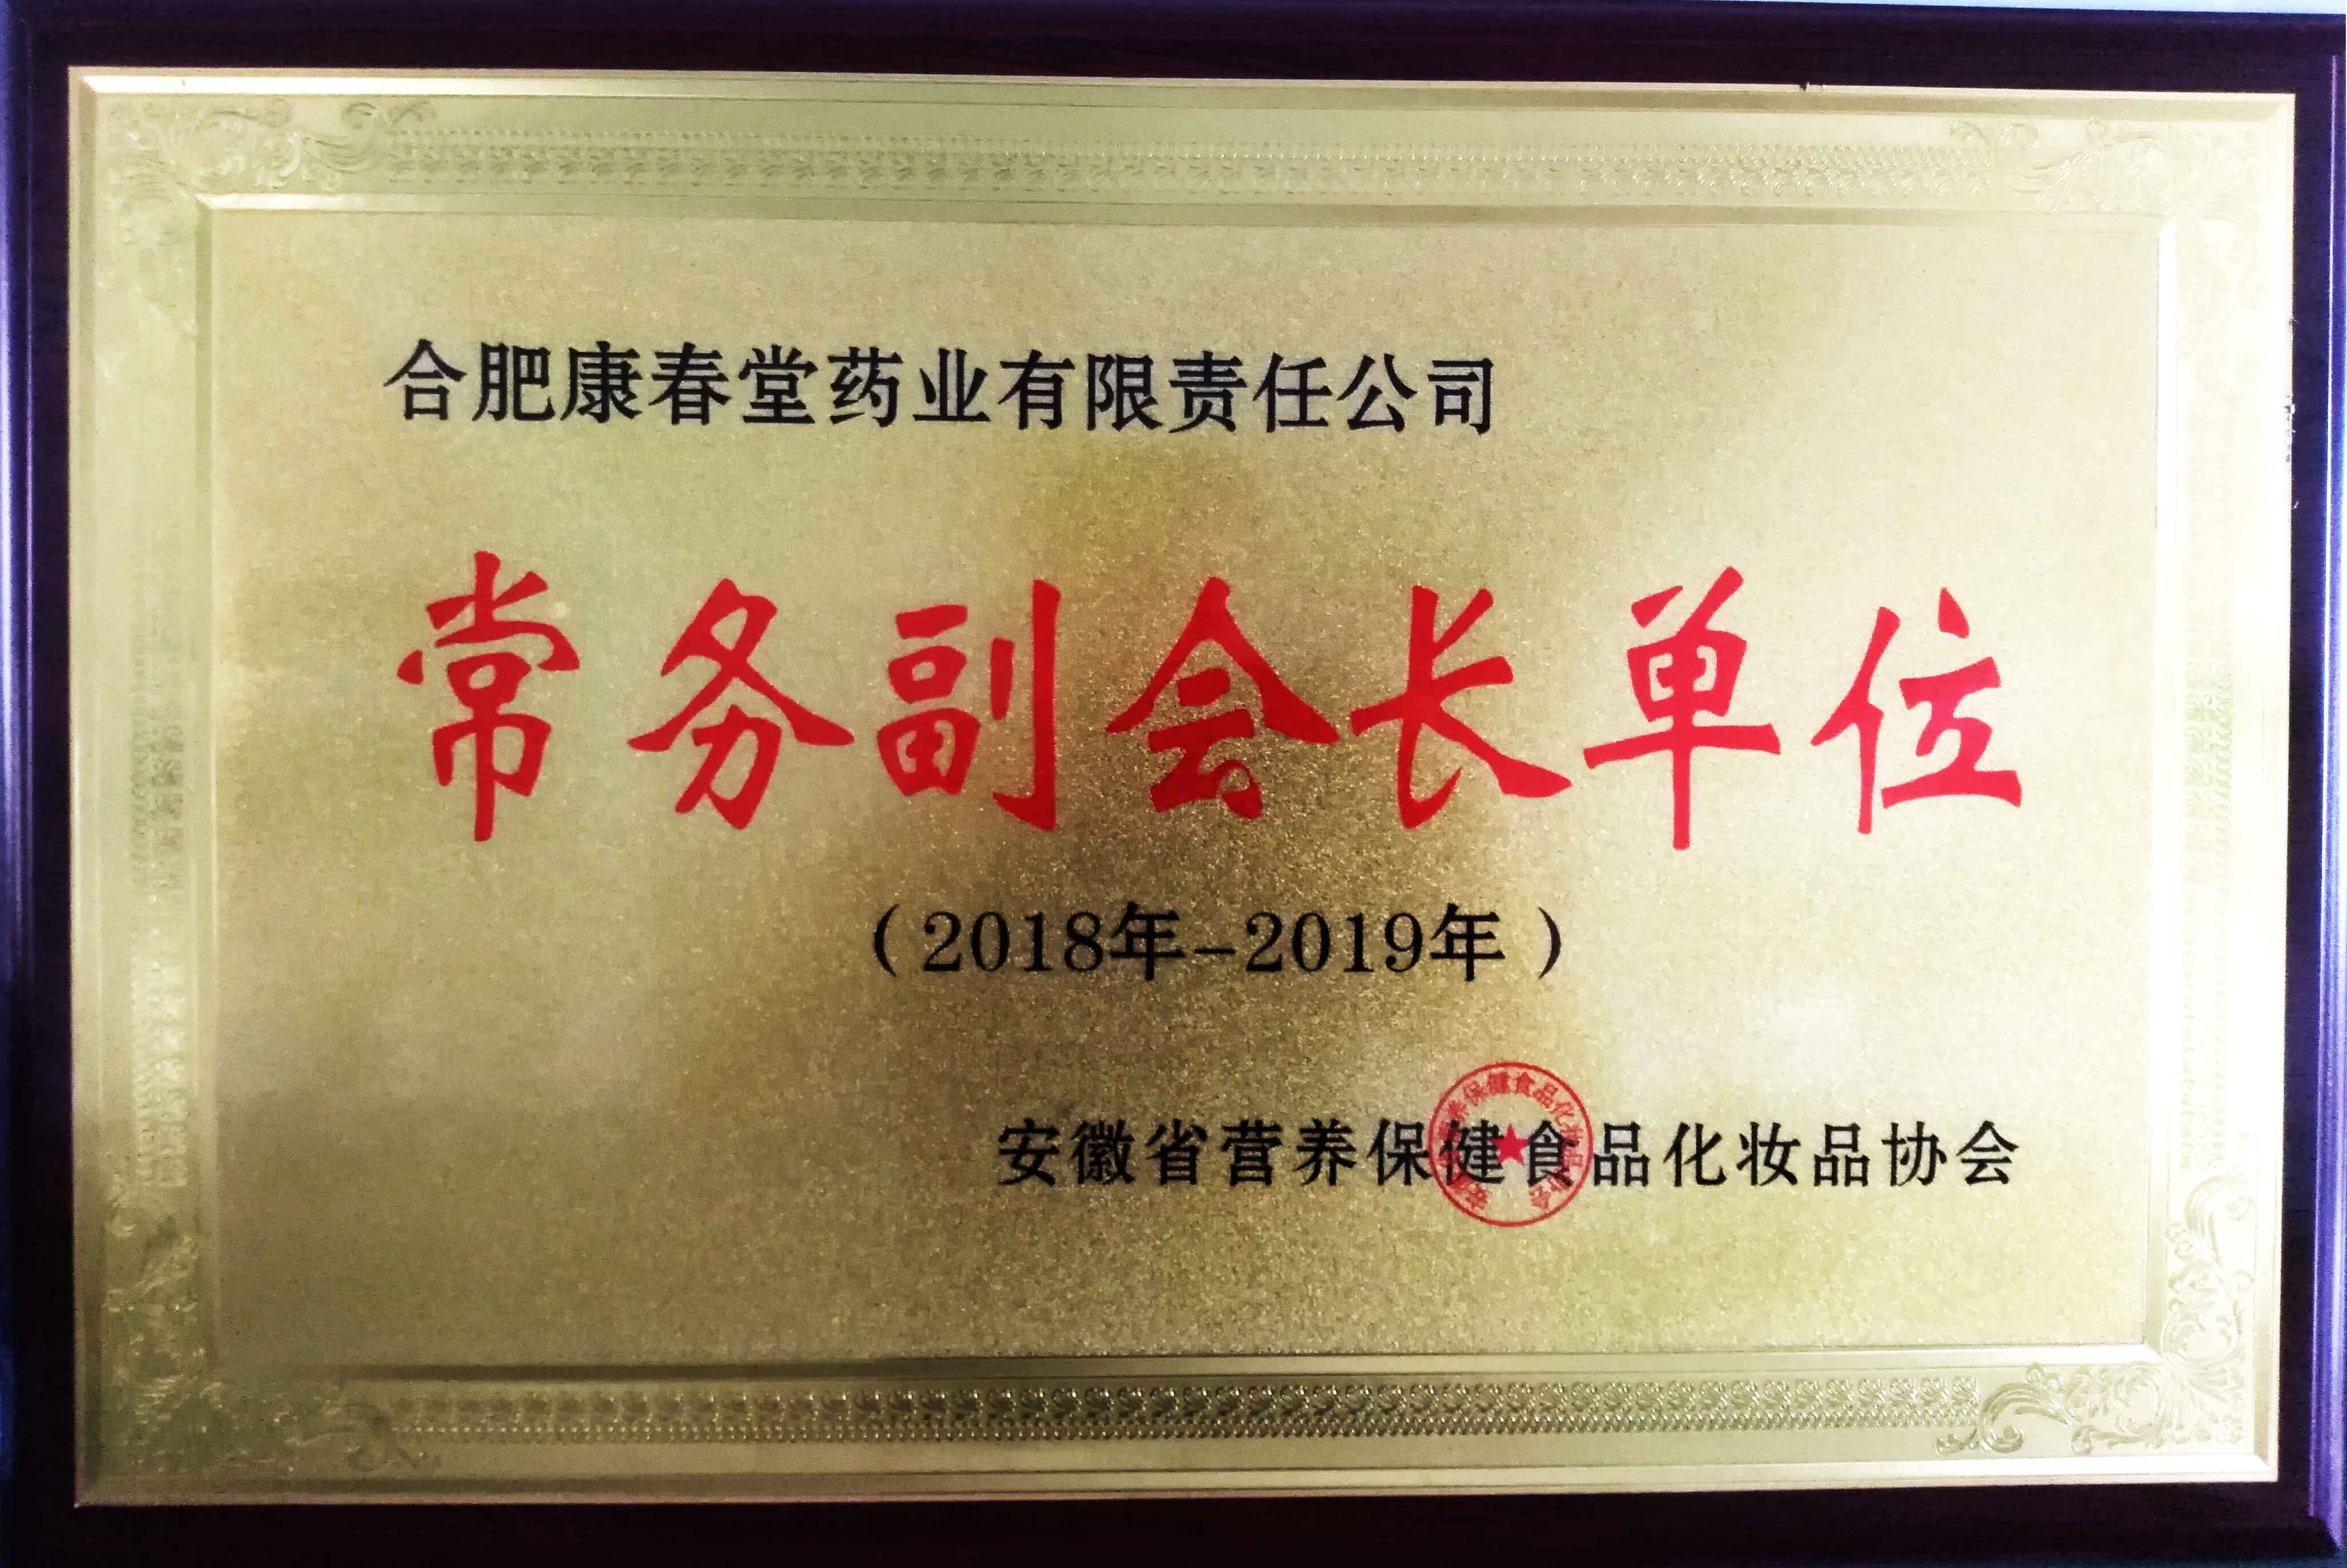 祝贺我司荣获“安徽省营养保健品化妆品协会” 常务副会长单位称号